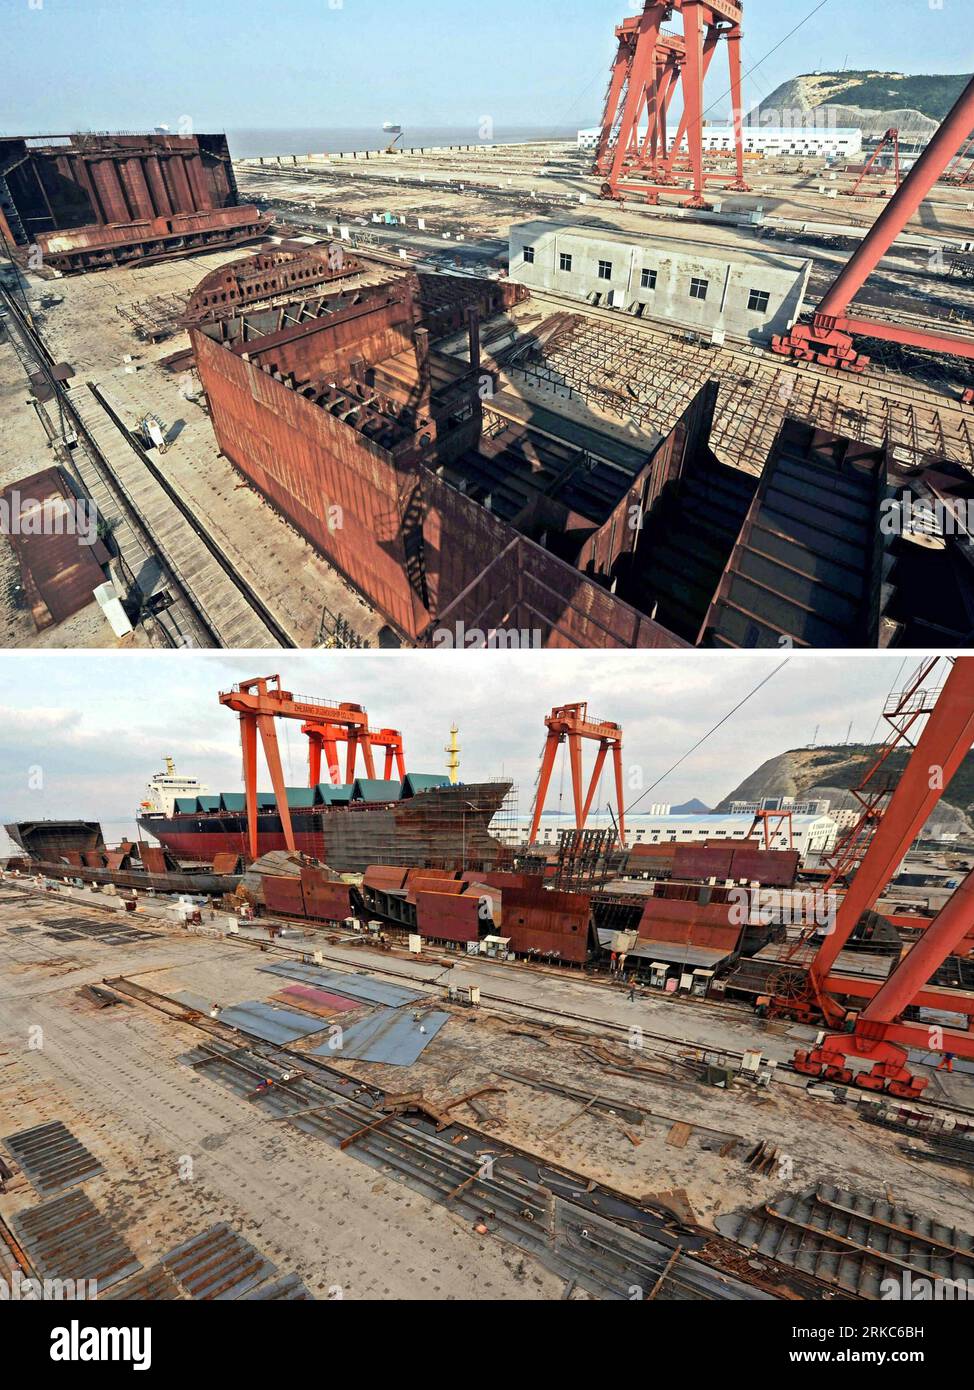 Bildnummer : 54678839 Datum : 23.11.2010 Copyright : imago/Xinhua (101126) -- TAIZHOU, 26 novembre 2010 (Xinhua) -- la photo combinée montre le même chantier naval privé dans la ville de Taizhou, province du Zhejiang dans l'est de la Chine, déserté le 18 octobre 2009 (Haut) et repris ses activités le 23 novembre 2010. En plus de 40 ans, l'océan vaste et profond a donné à Li Changxian tout sauf les soucis. Mais depuis le début de la crise financière mondiale il y a deux ans, le milliardaire de 44 ans est tombé dans le blues. Debout dans le chantier naval autrefois animé de Hongda qu'il dirigeait à Taizhou, Li Changxian a mis le sien Banque D'Images